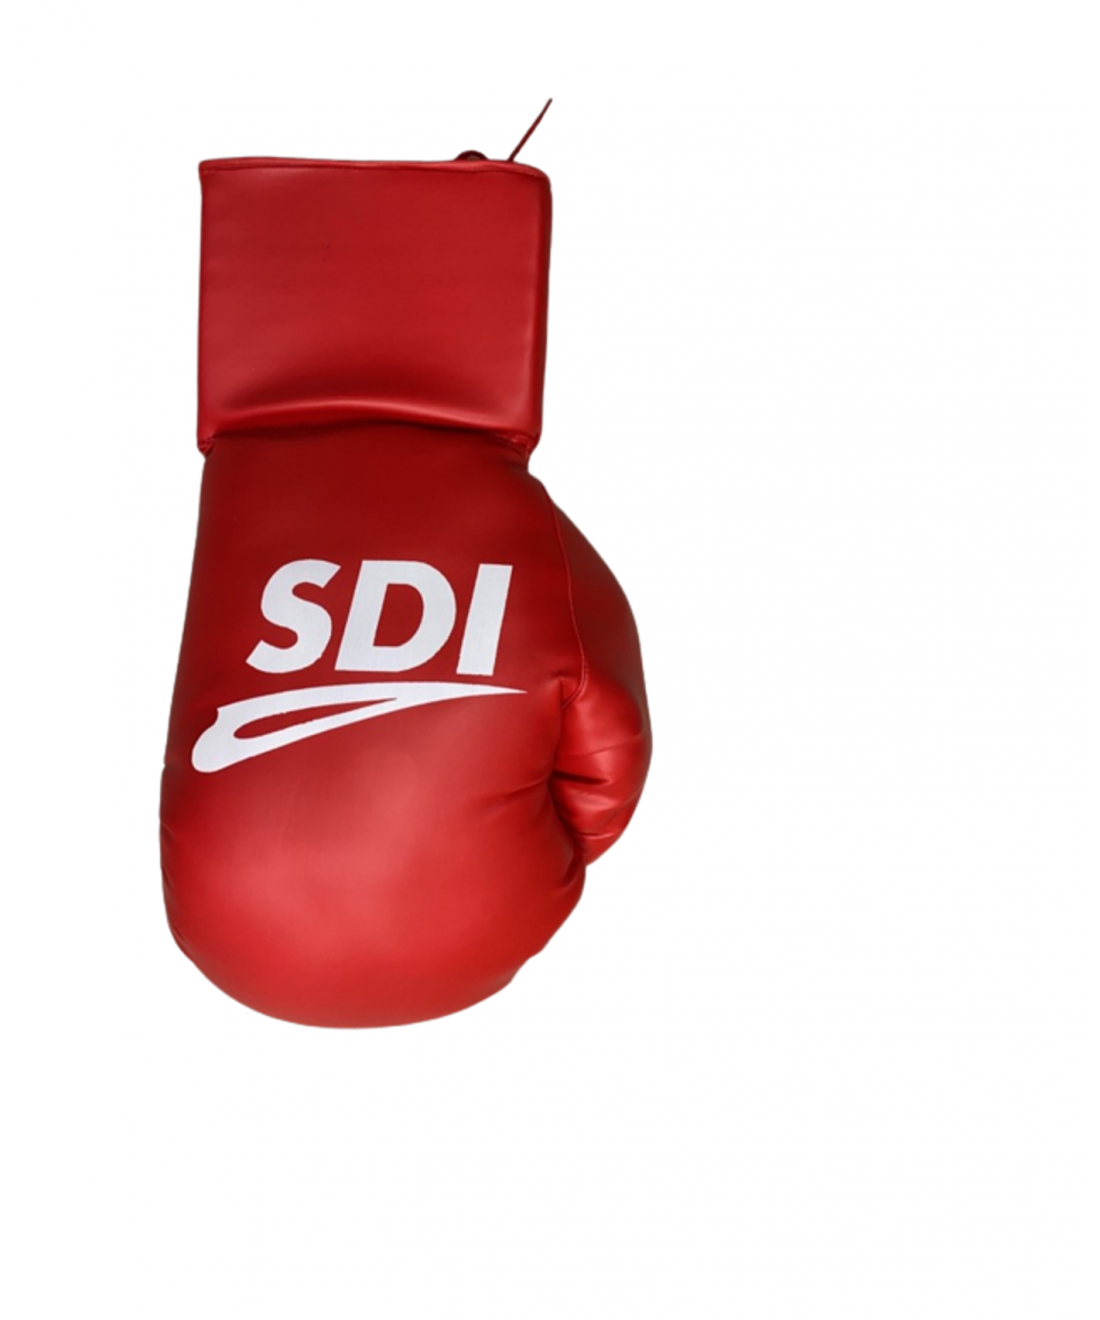 Gant de MMA SDI rouge - BOXE STORE